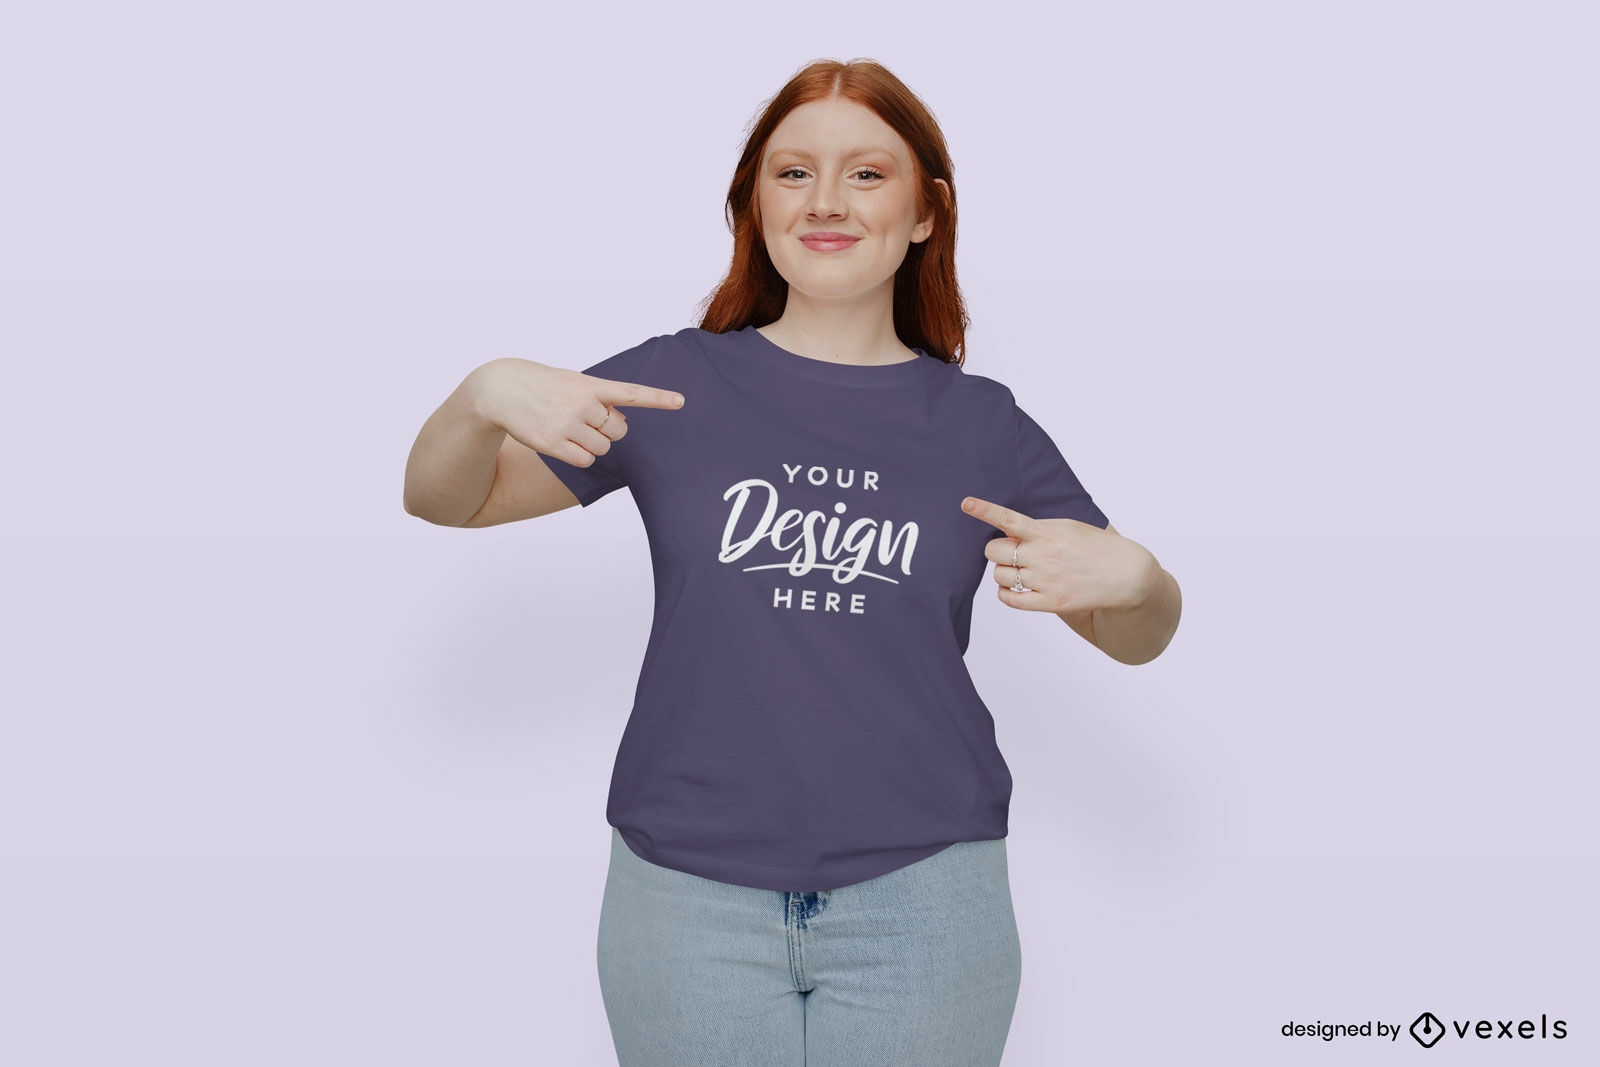 M?dchen mit lila T-Shirt-Modell im flachen Hintergrund